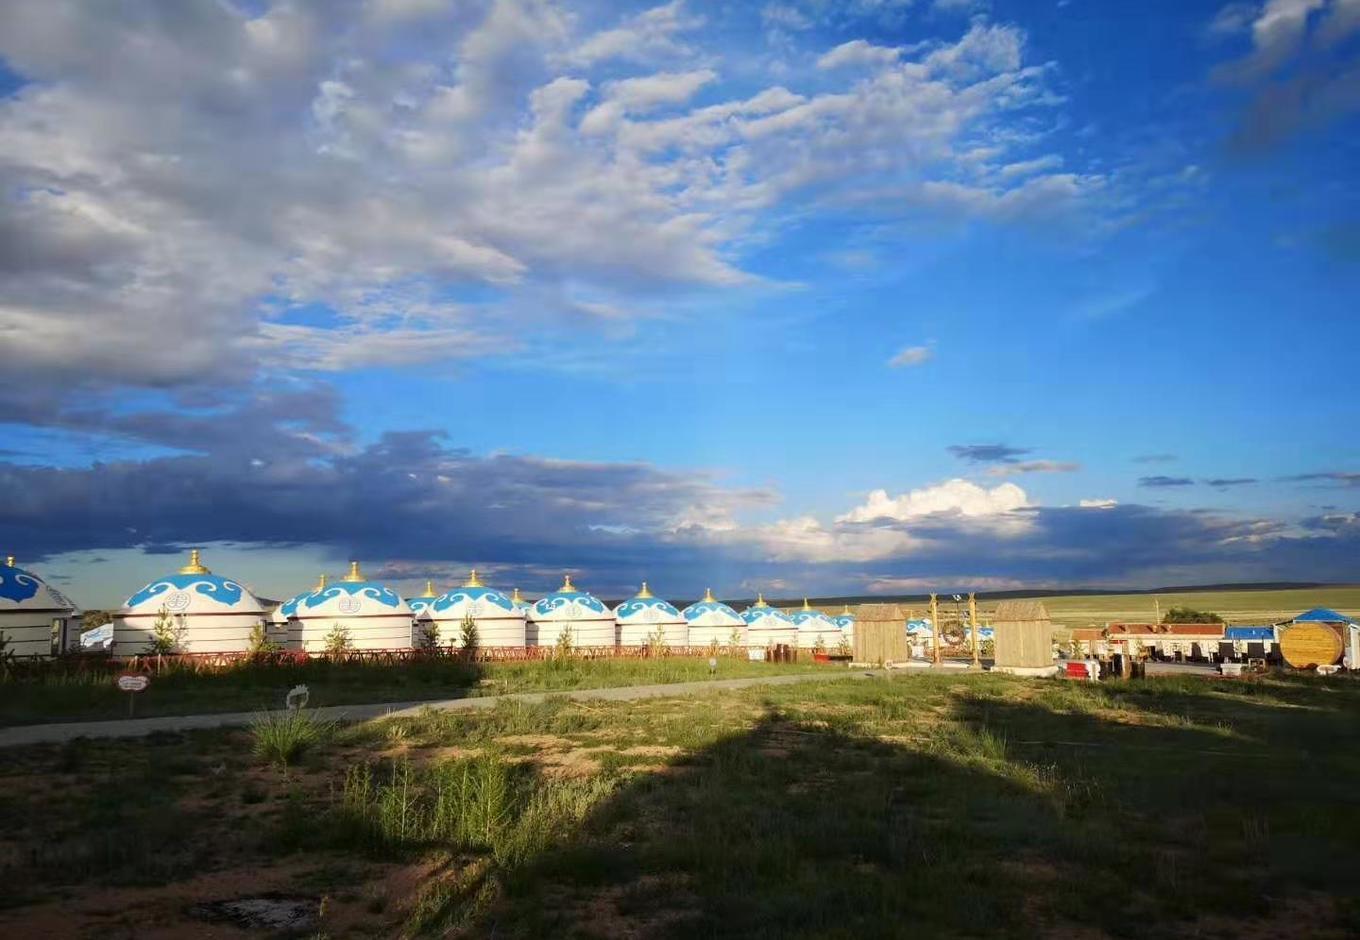 【携程攻略】达茂旗红格尔敖包旅游景区景点,红格尔敖包旅游景区位于内蒙古包头市达茂旗希拉穆仁原草原，是当地出…